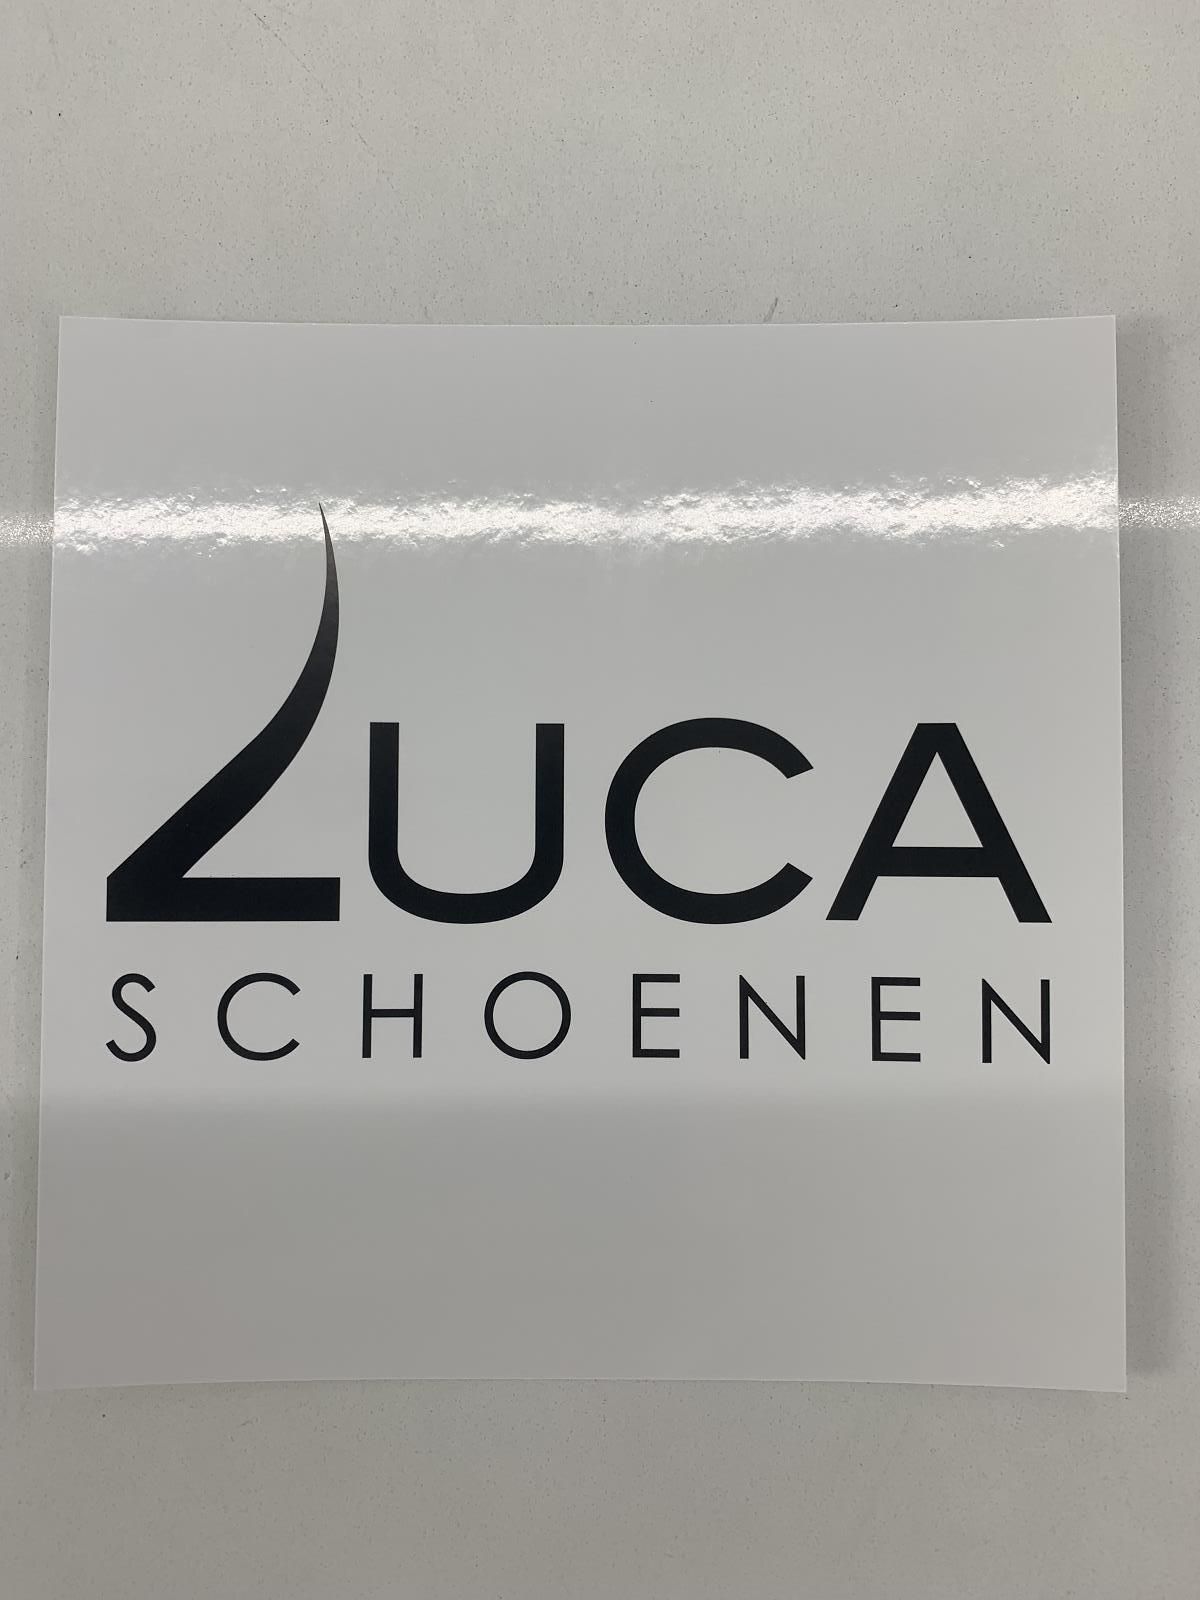     (Kadobon 25€ - ) - Schoenen Luca